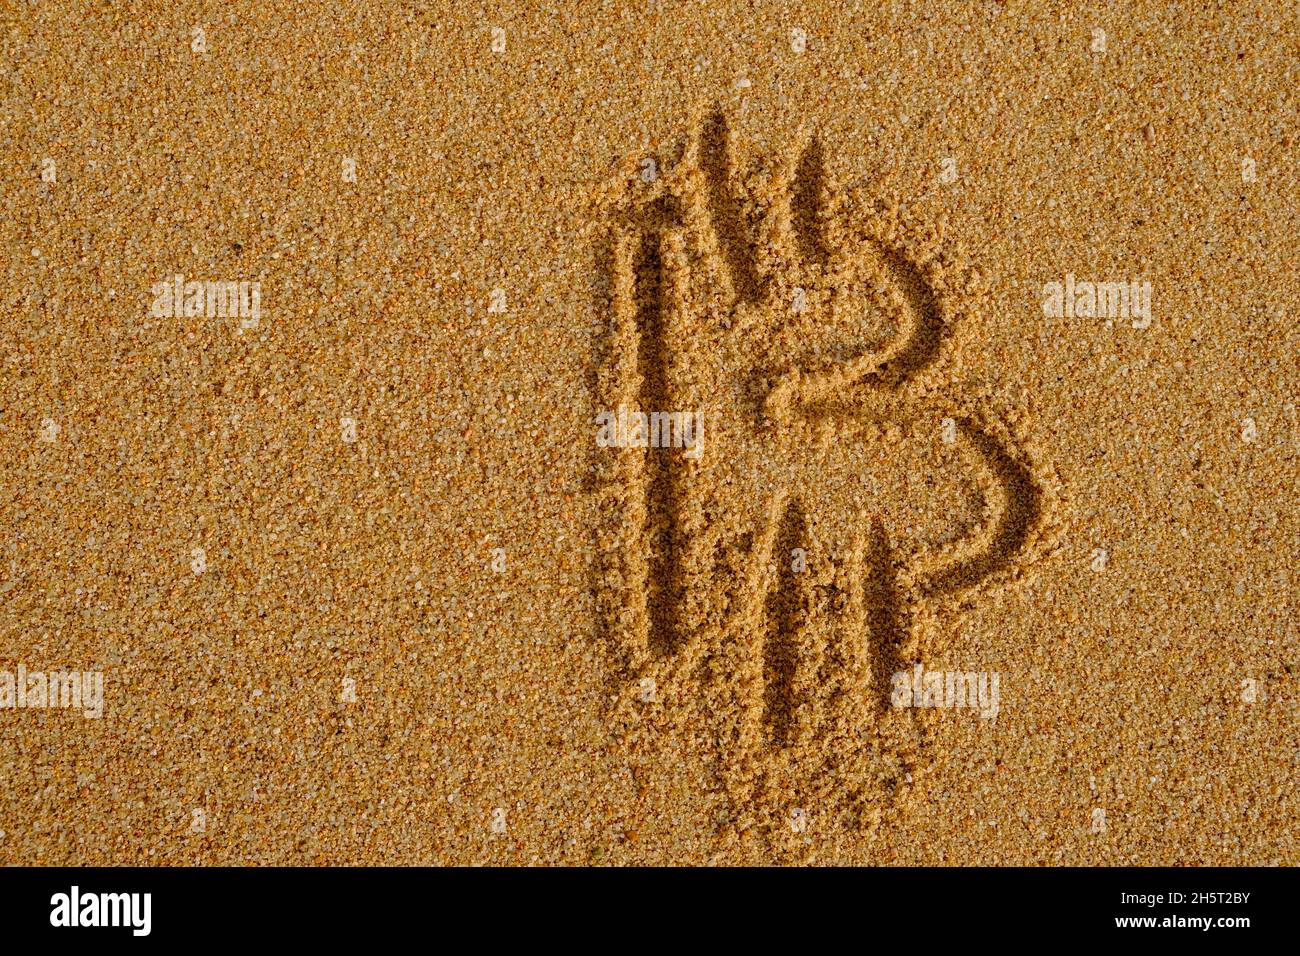 Bitcoin sign written on sand in evening sunlight Stock Photo